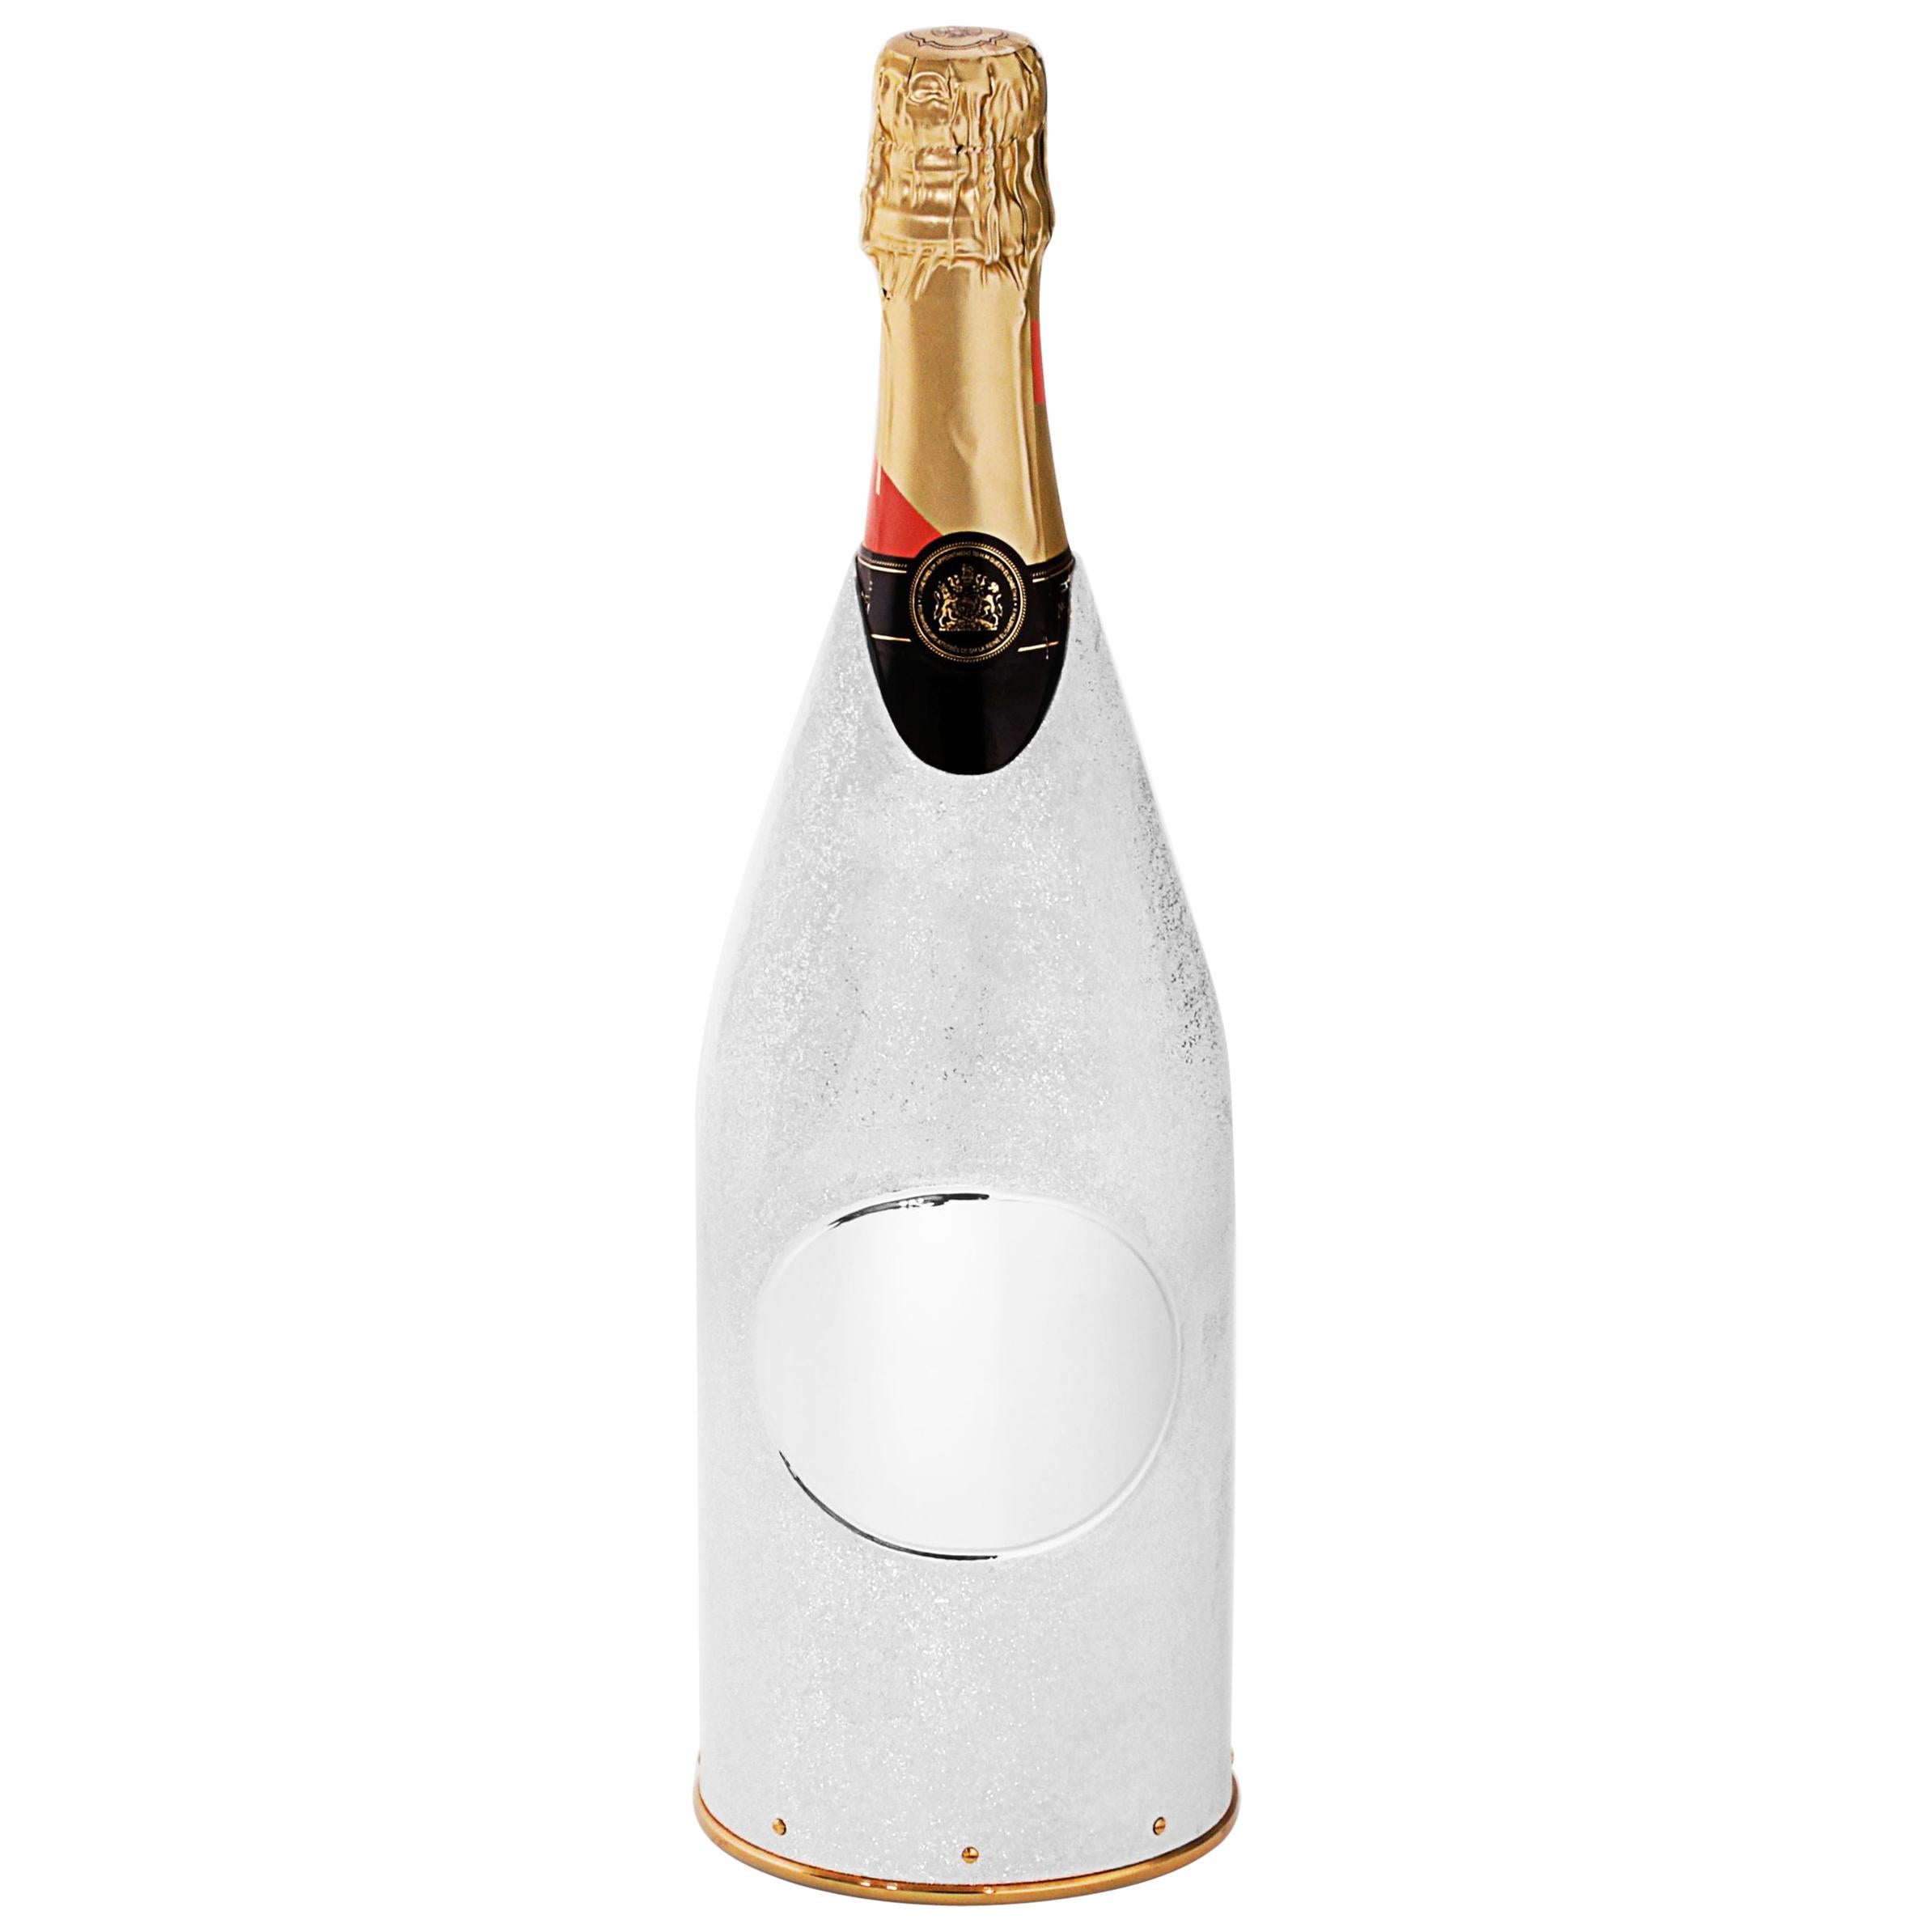 Der Wert dieses Champagnerdeckels/der Glacette beruht auf den innovativen Techniken, die bei seiner Herstellung angewandt wurden. Wie auf den Bildern deutlich zu sehen ist, glänzt die Oberfläche des reinen Silbers 999/°° K-OVER wie der Mond. Diese